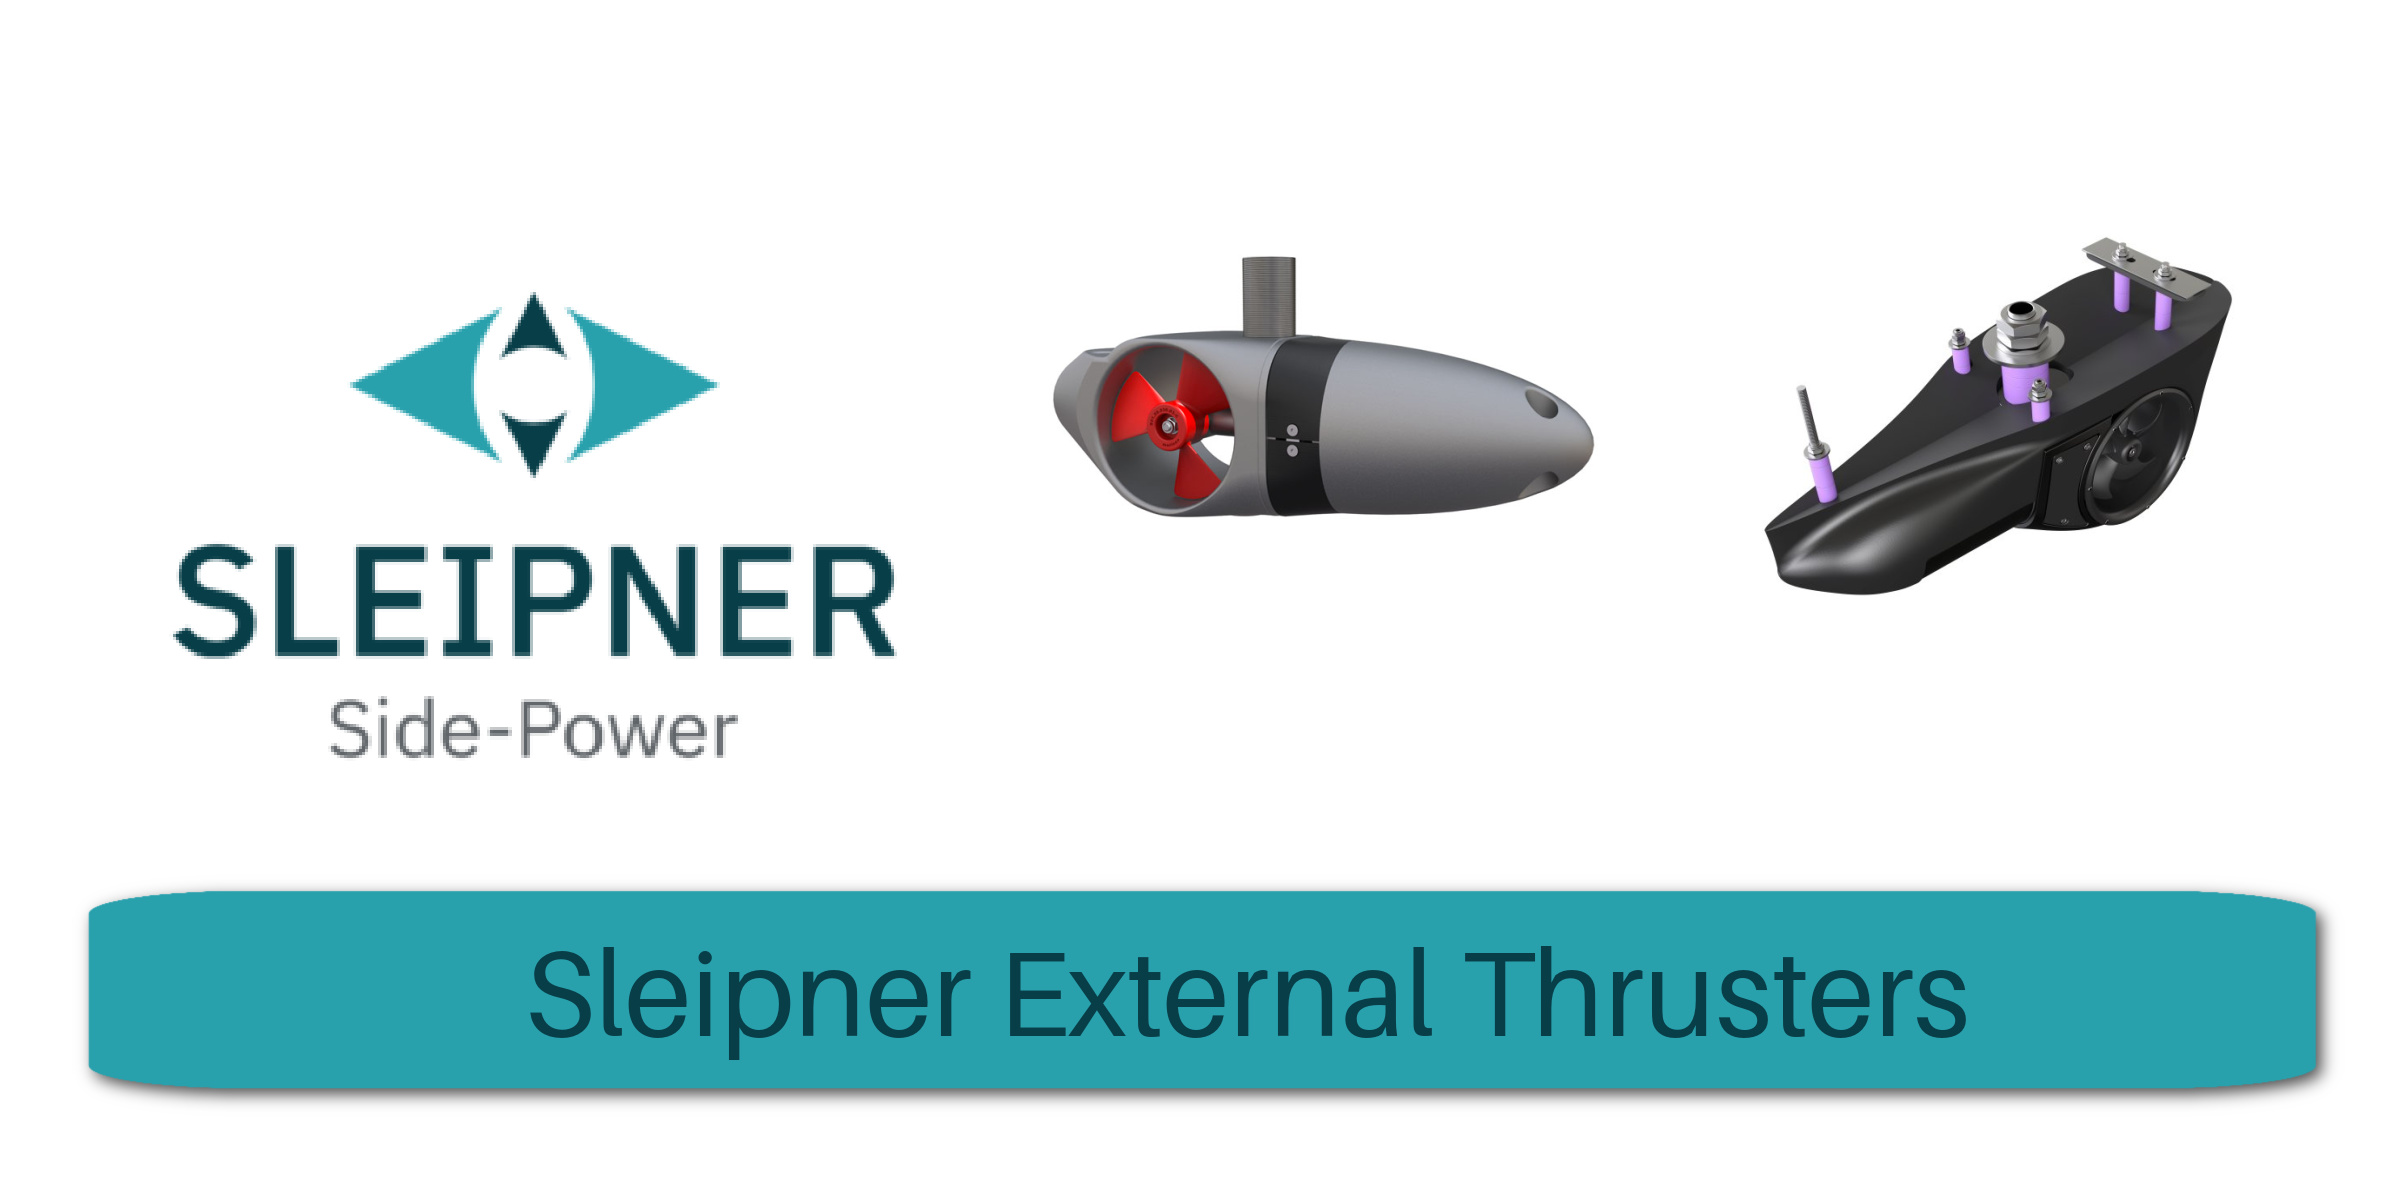 External Thrusters